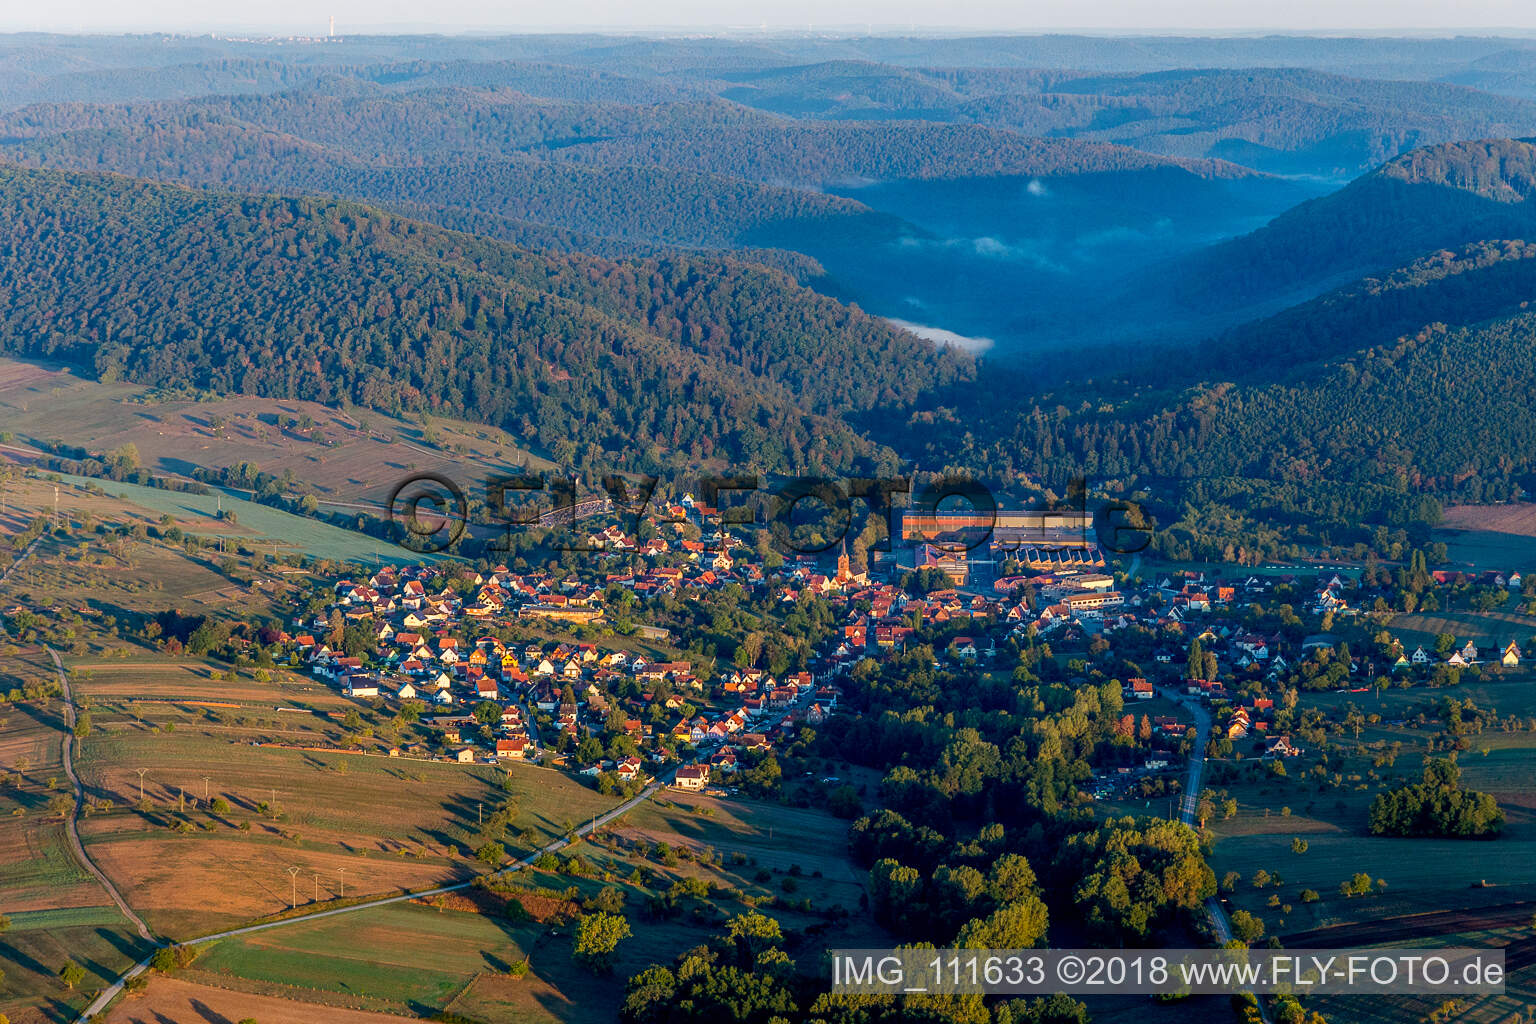 Zinswiller im Bundesland Bas-Rhin, Frankreich aus der Drohnenperspektive